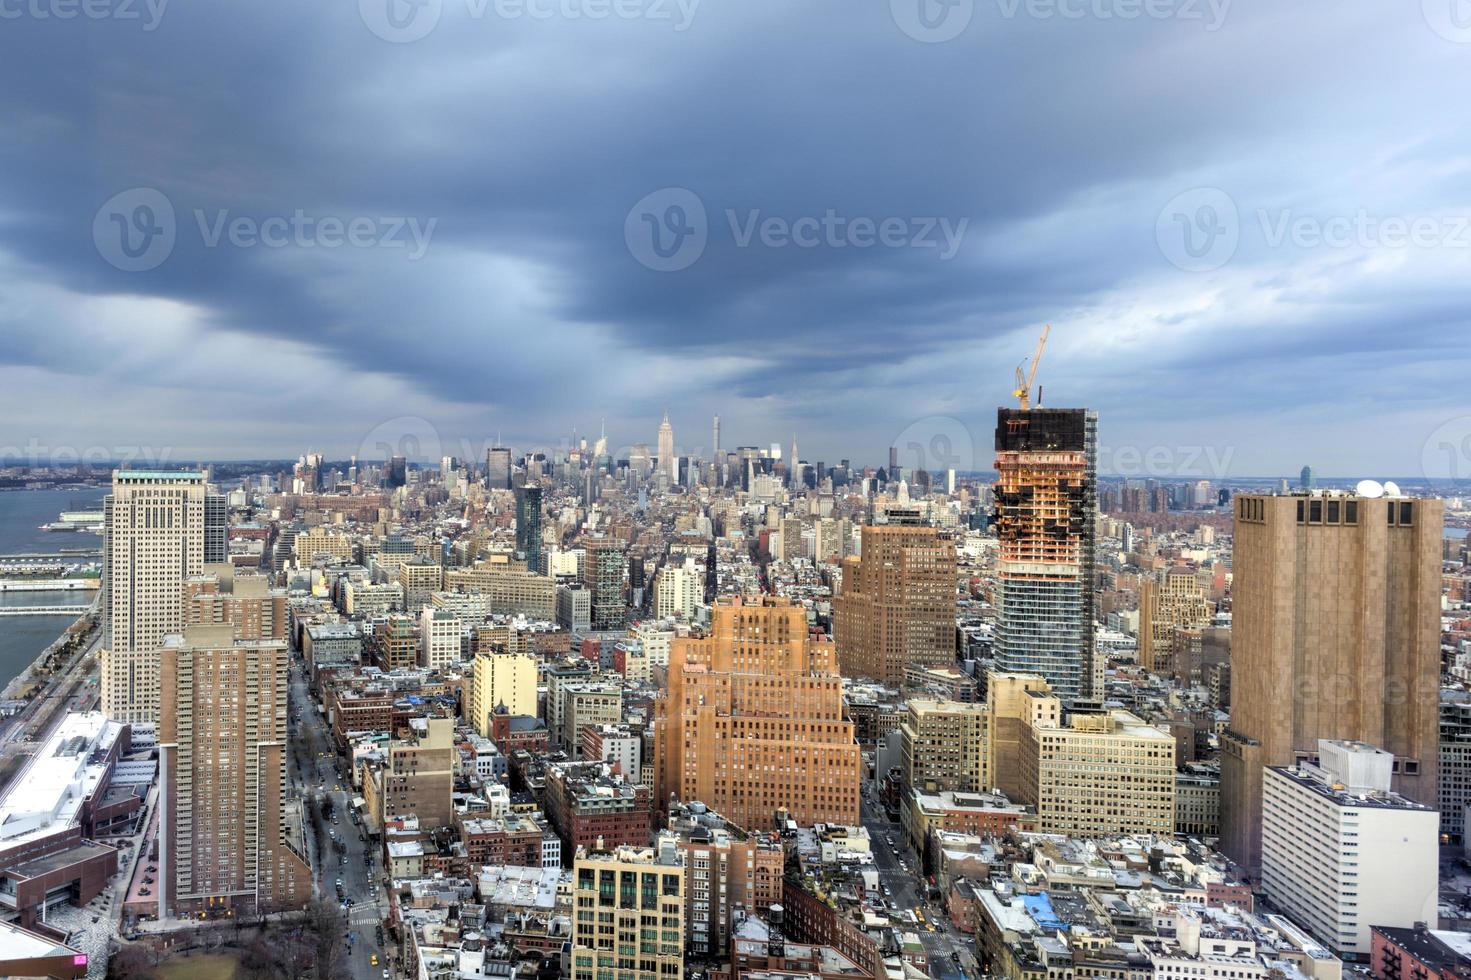 horizonte de la ciudad de nueva york foto